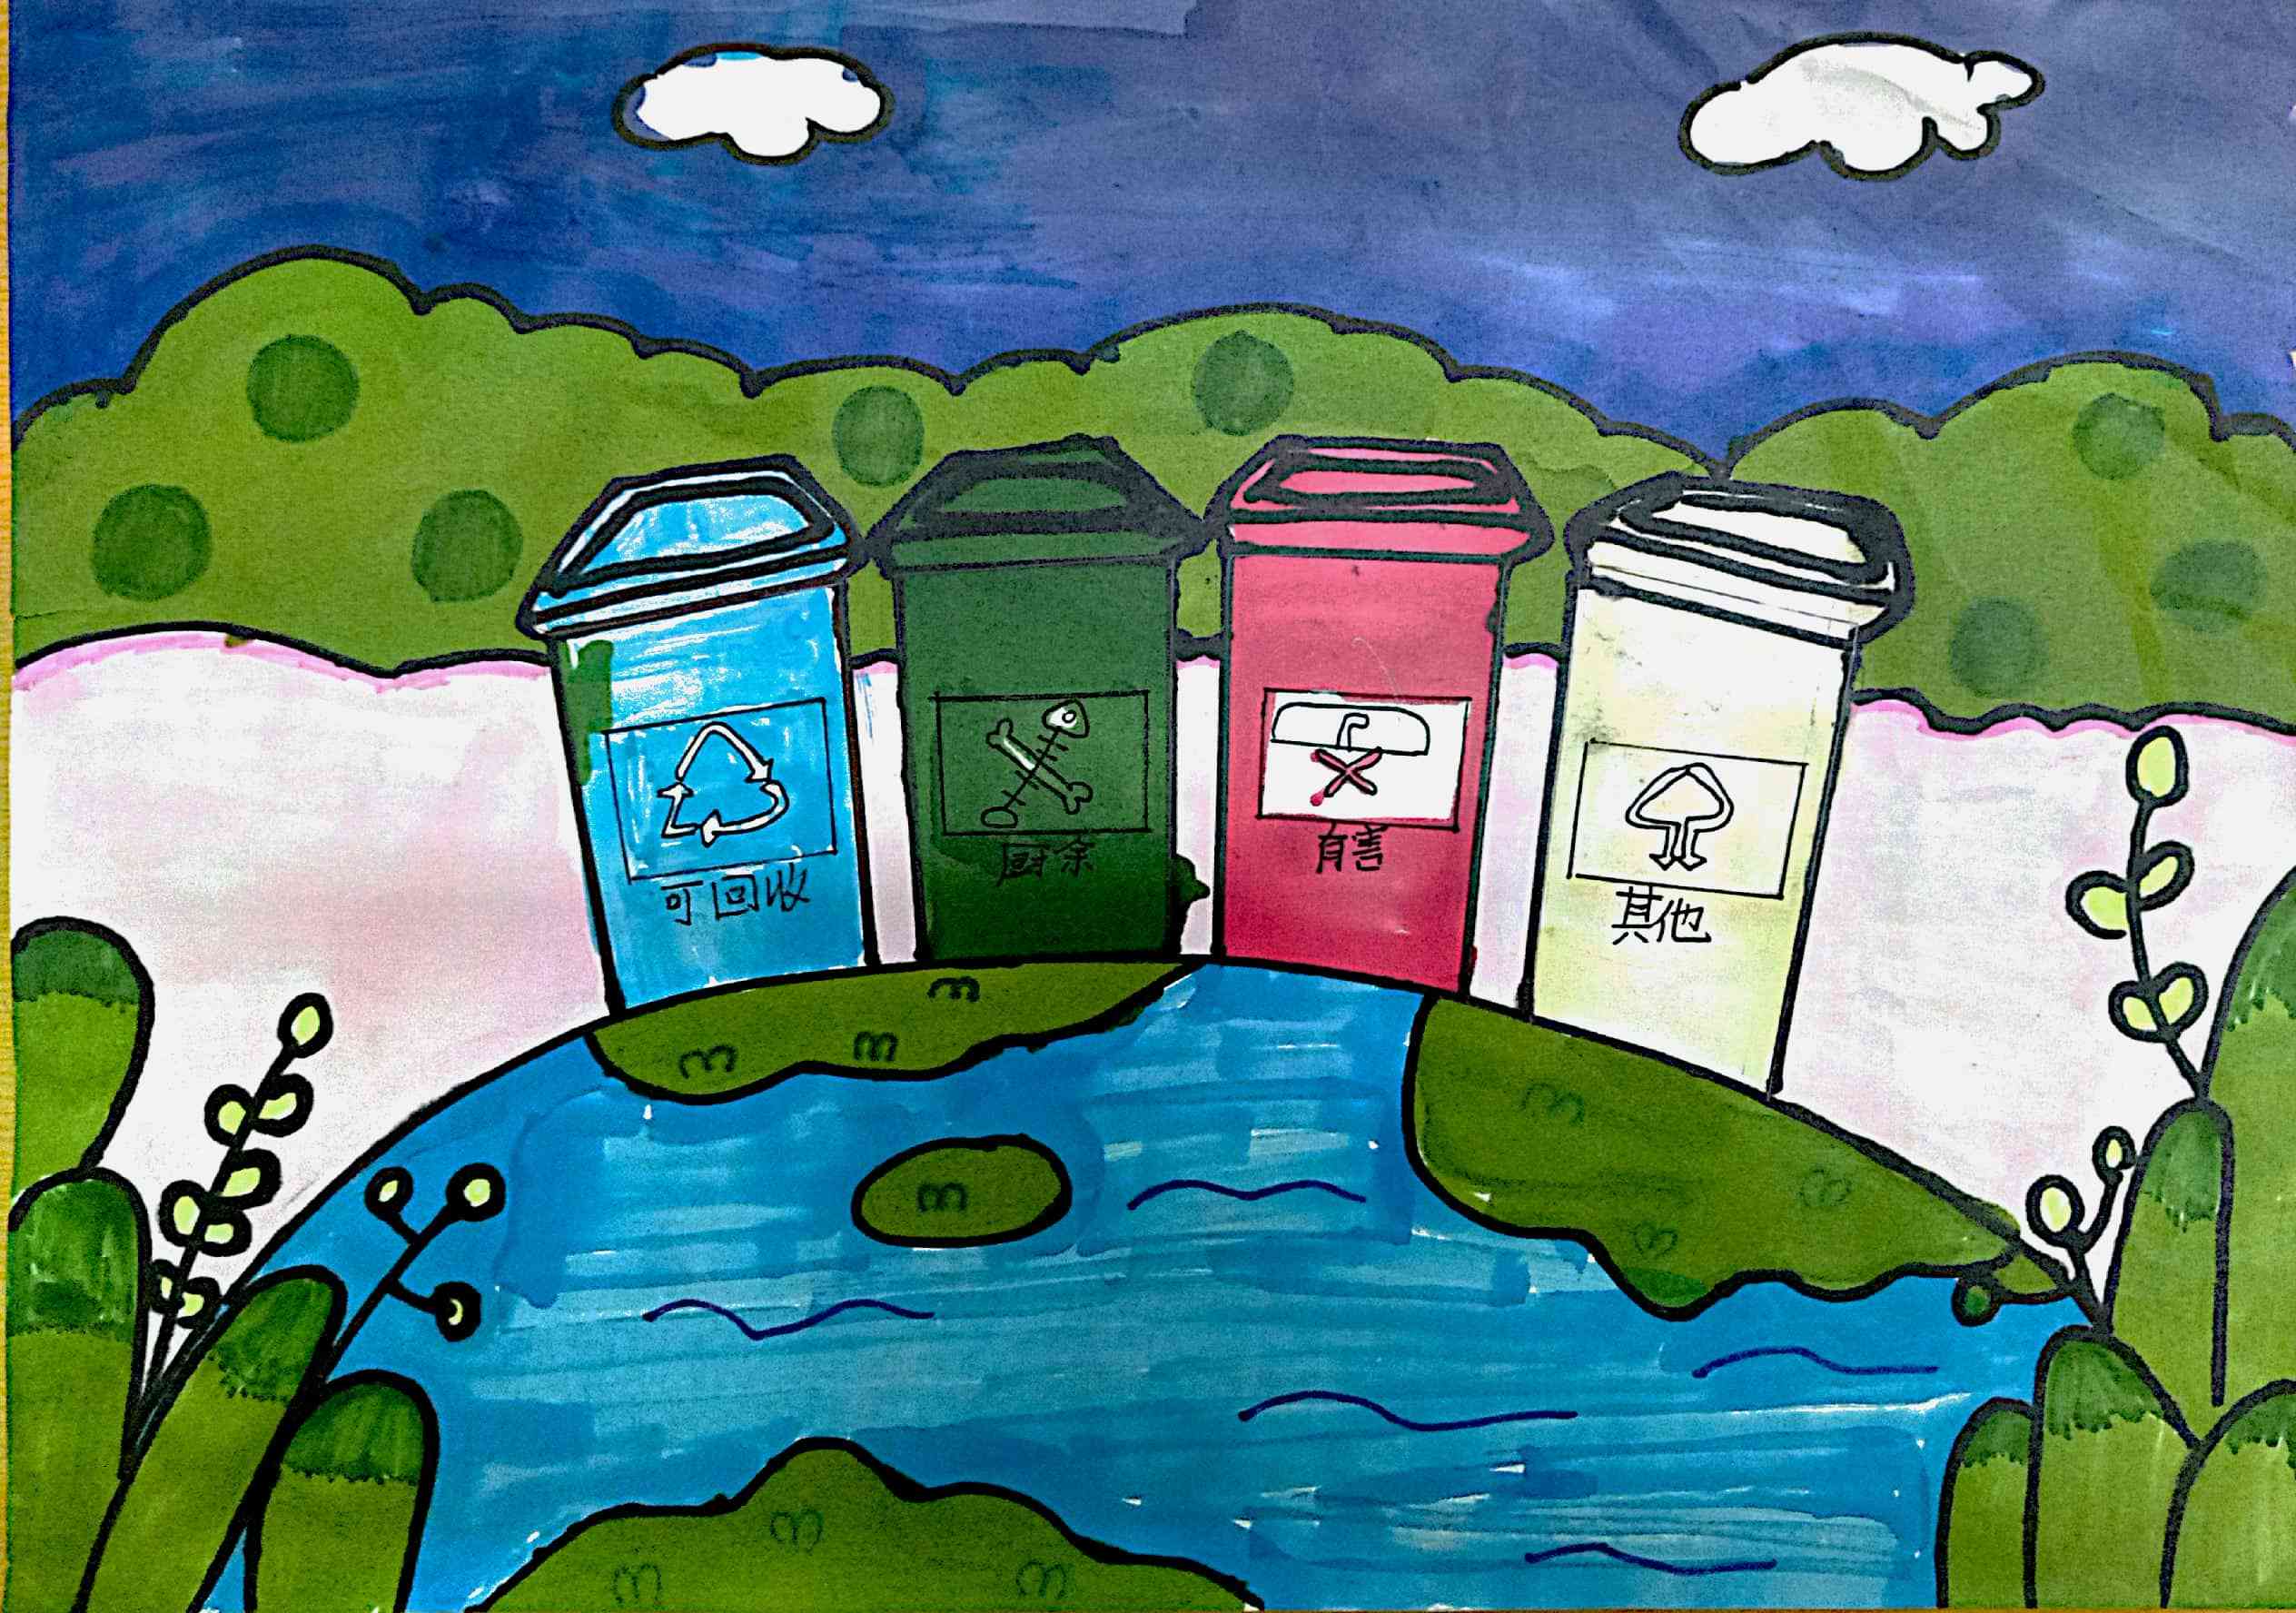 苏州:垃圾分类主题绘画 倡导绿色环保理念